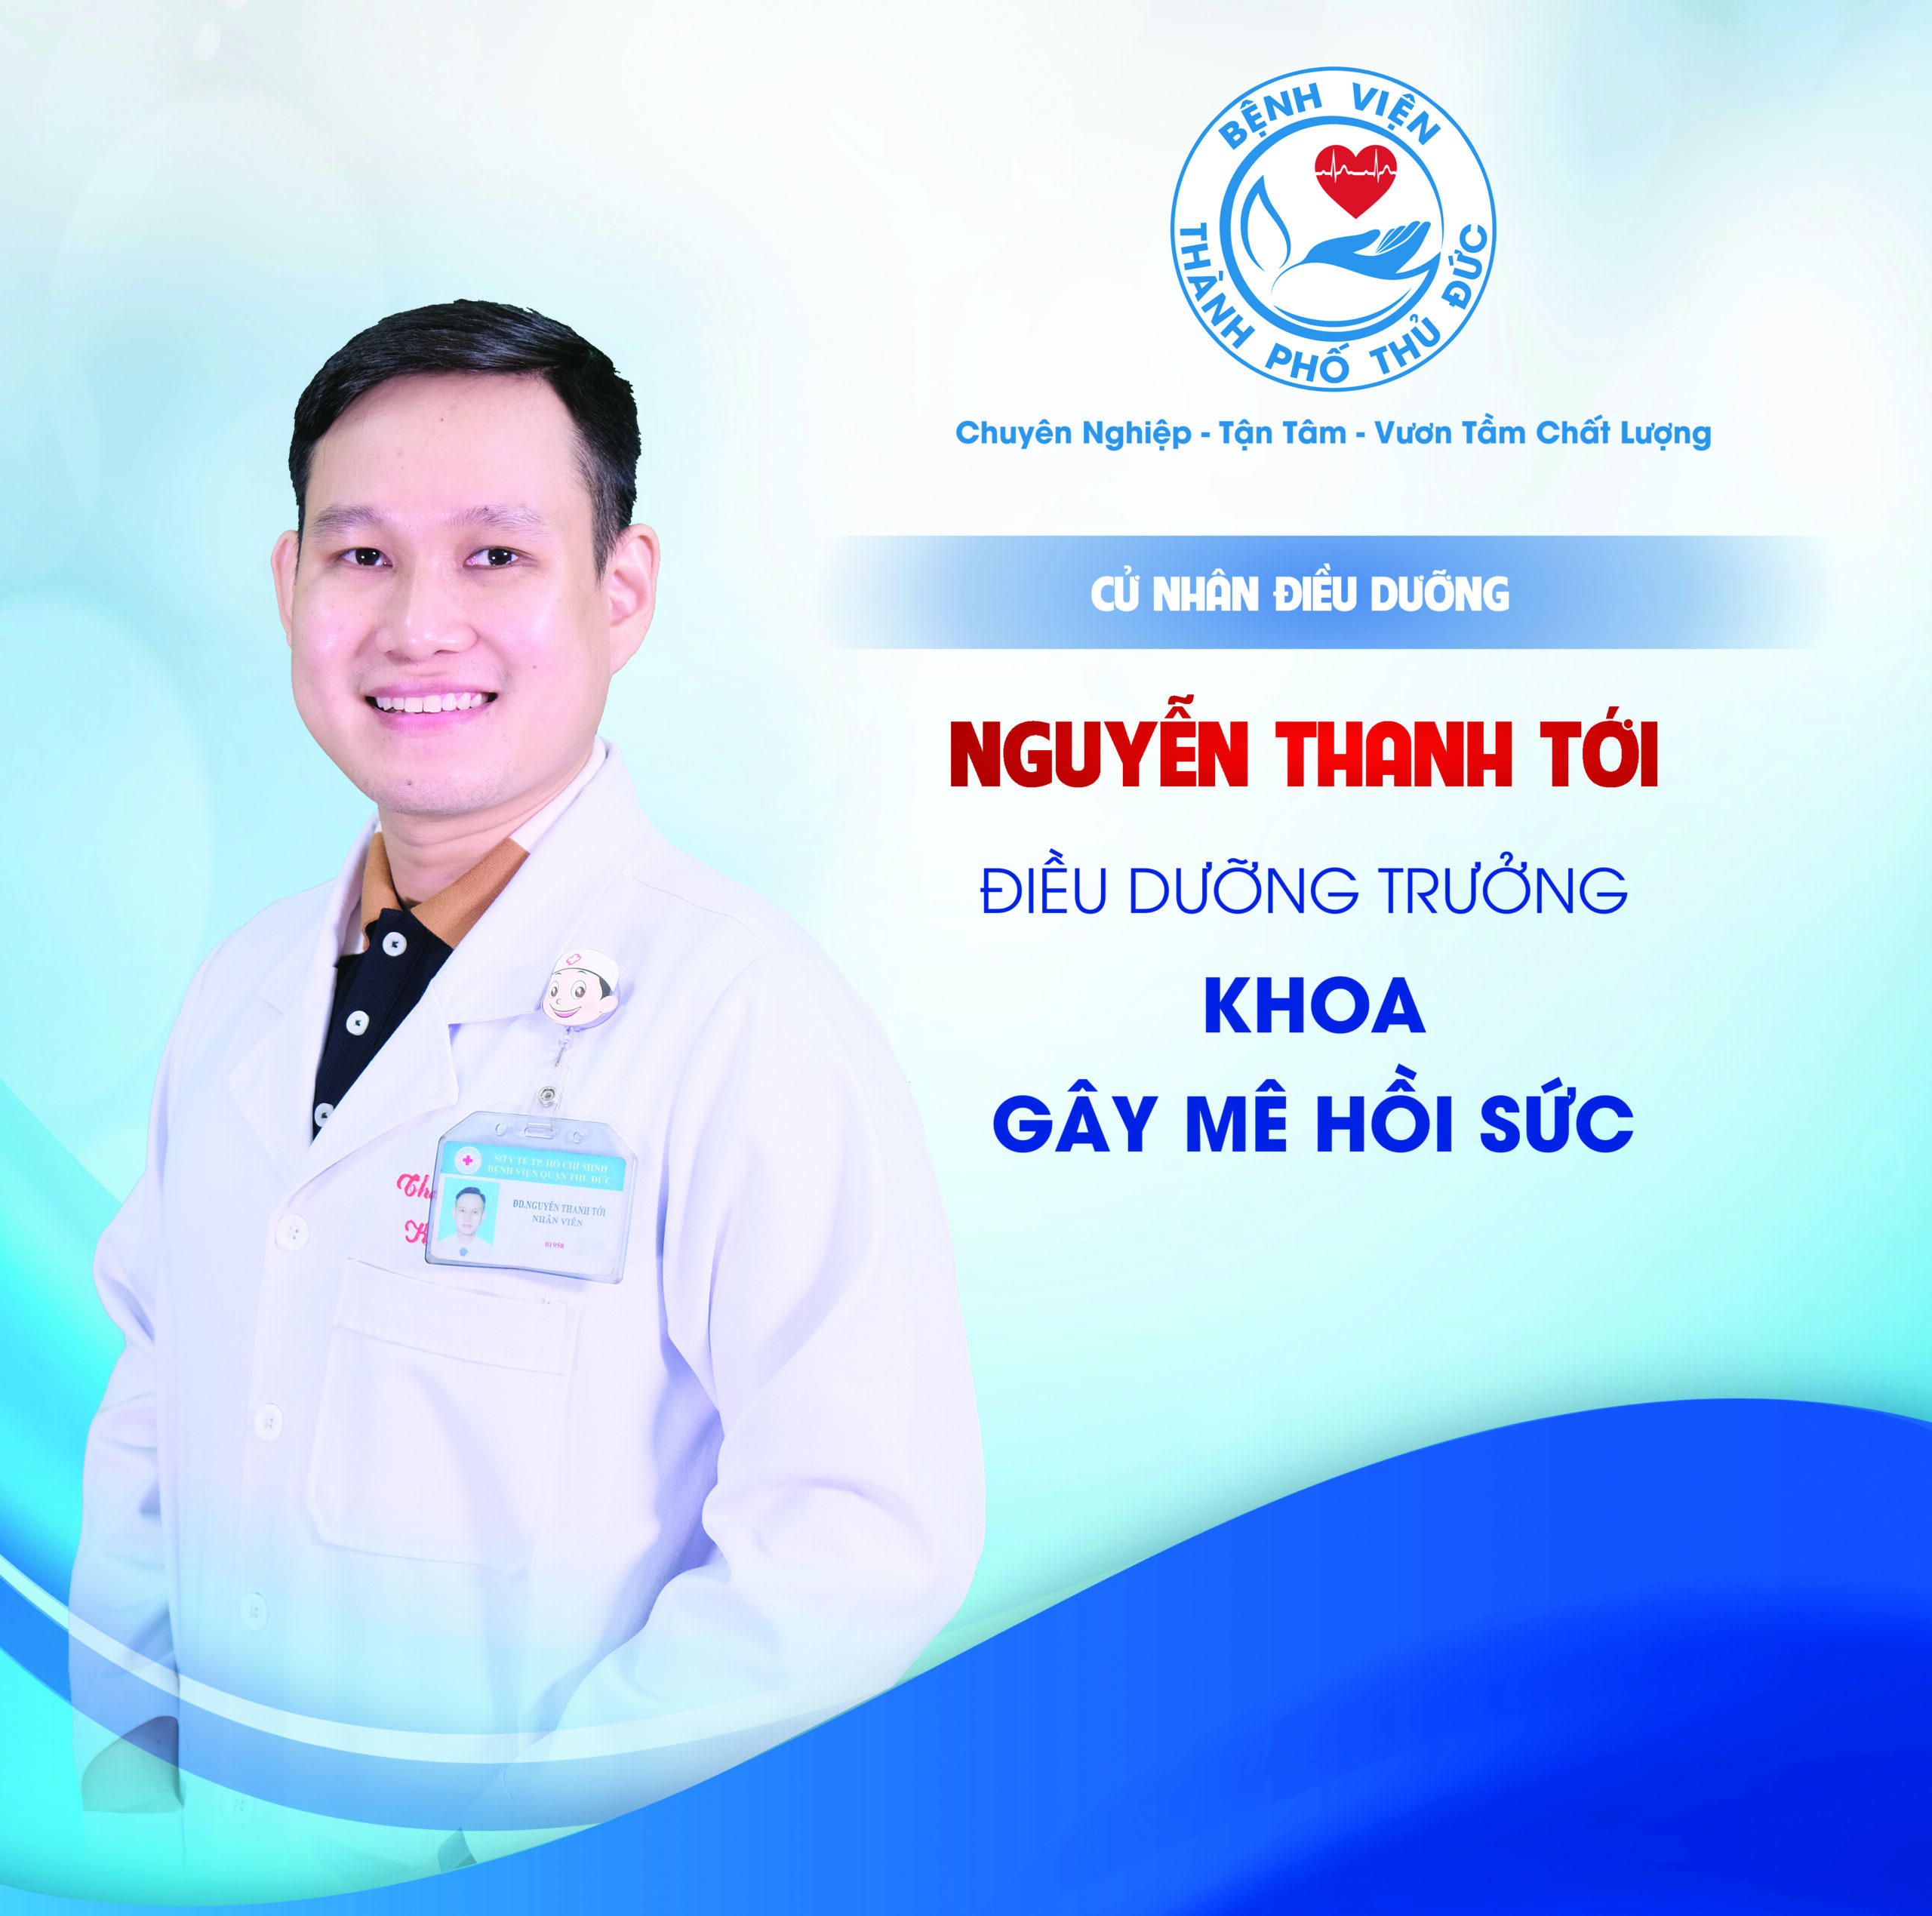 CNĐD. Nguyễn Thanh Tới - Điều dưỡng Trưởng khoa Gây mê hồi sức